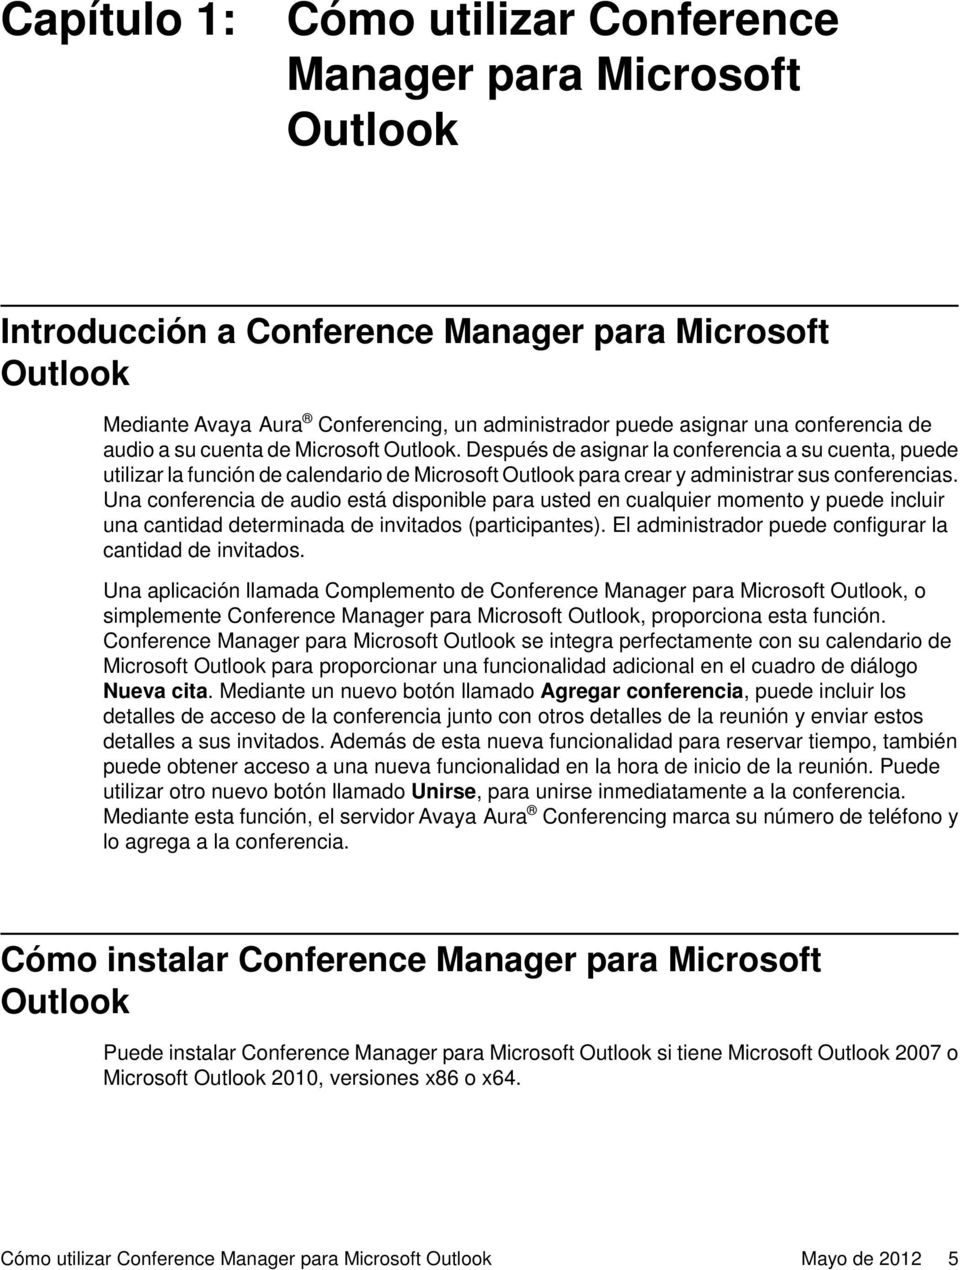 Después de asignar la conferencia a su cuenta, puede utilizar la función de calendario de Microsoft Outlook para crear y administrar sus conferencias.